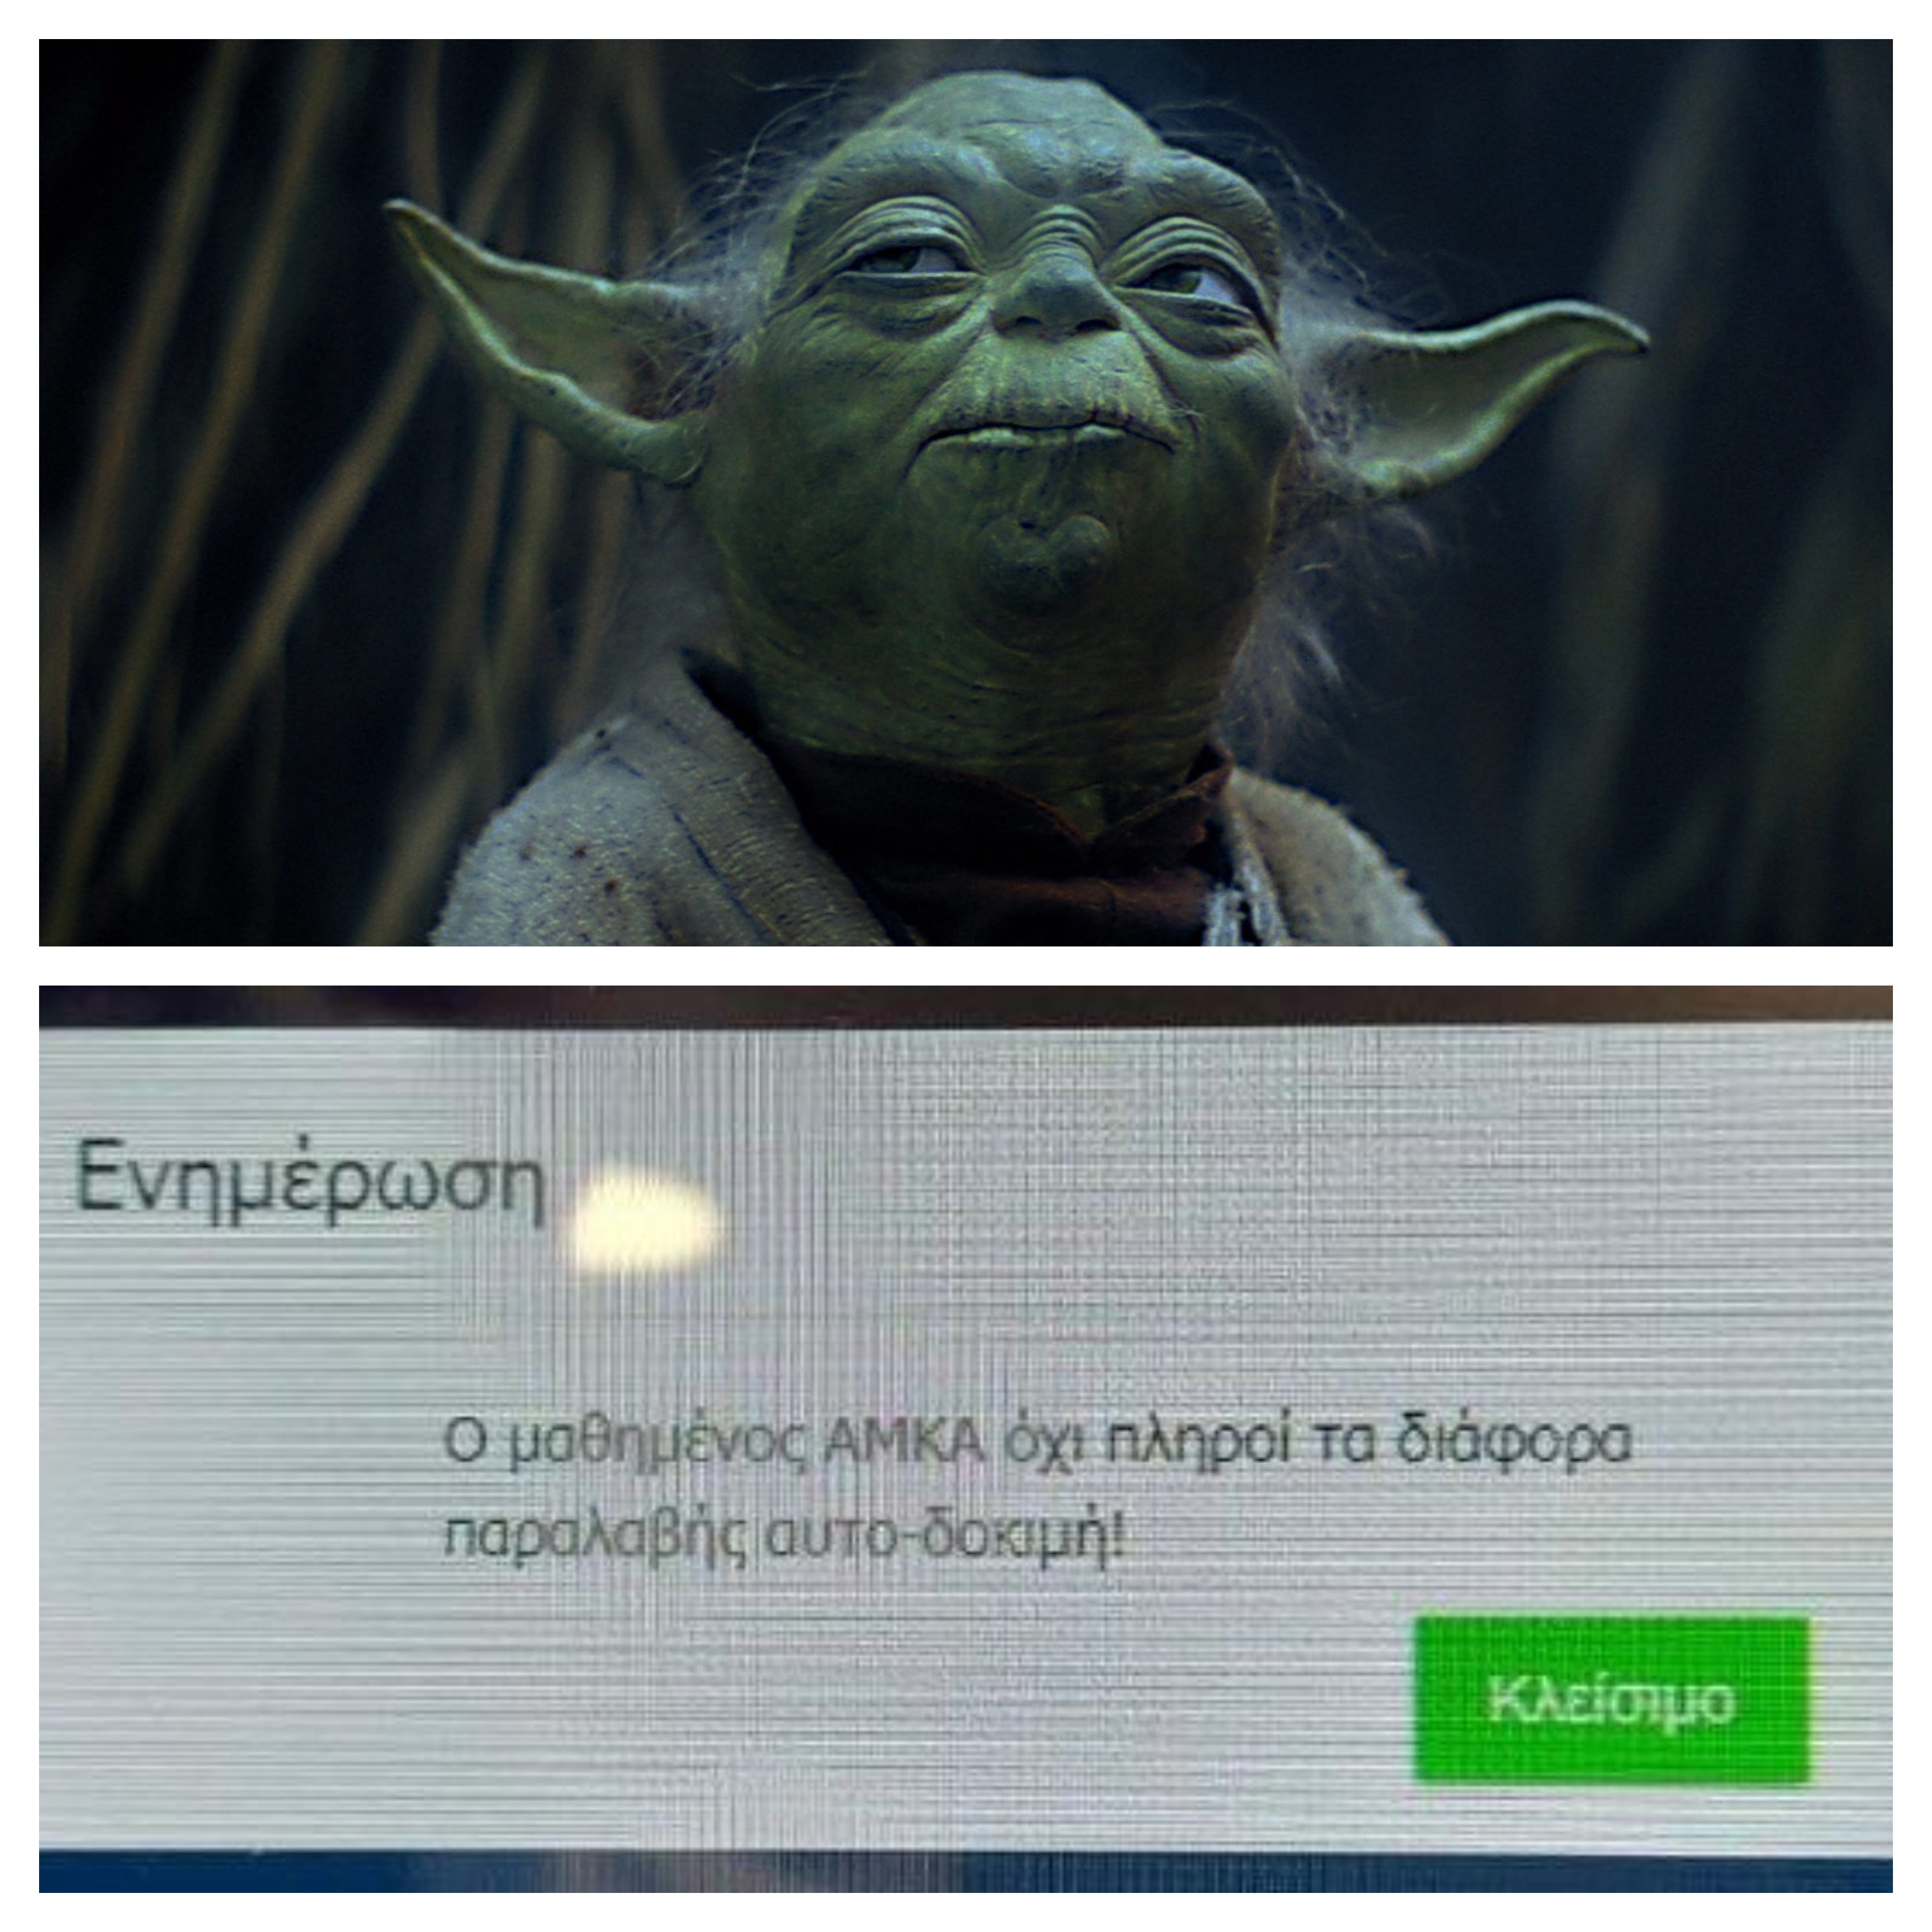 Με απόλυτη επιτυχία ολοκλήρωσε την εγγραφή του στην πλατφόρμα των self test o Yoda